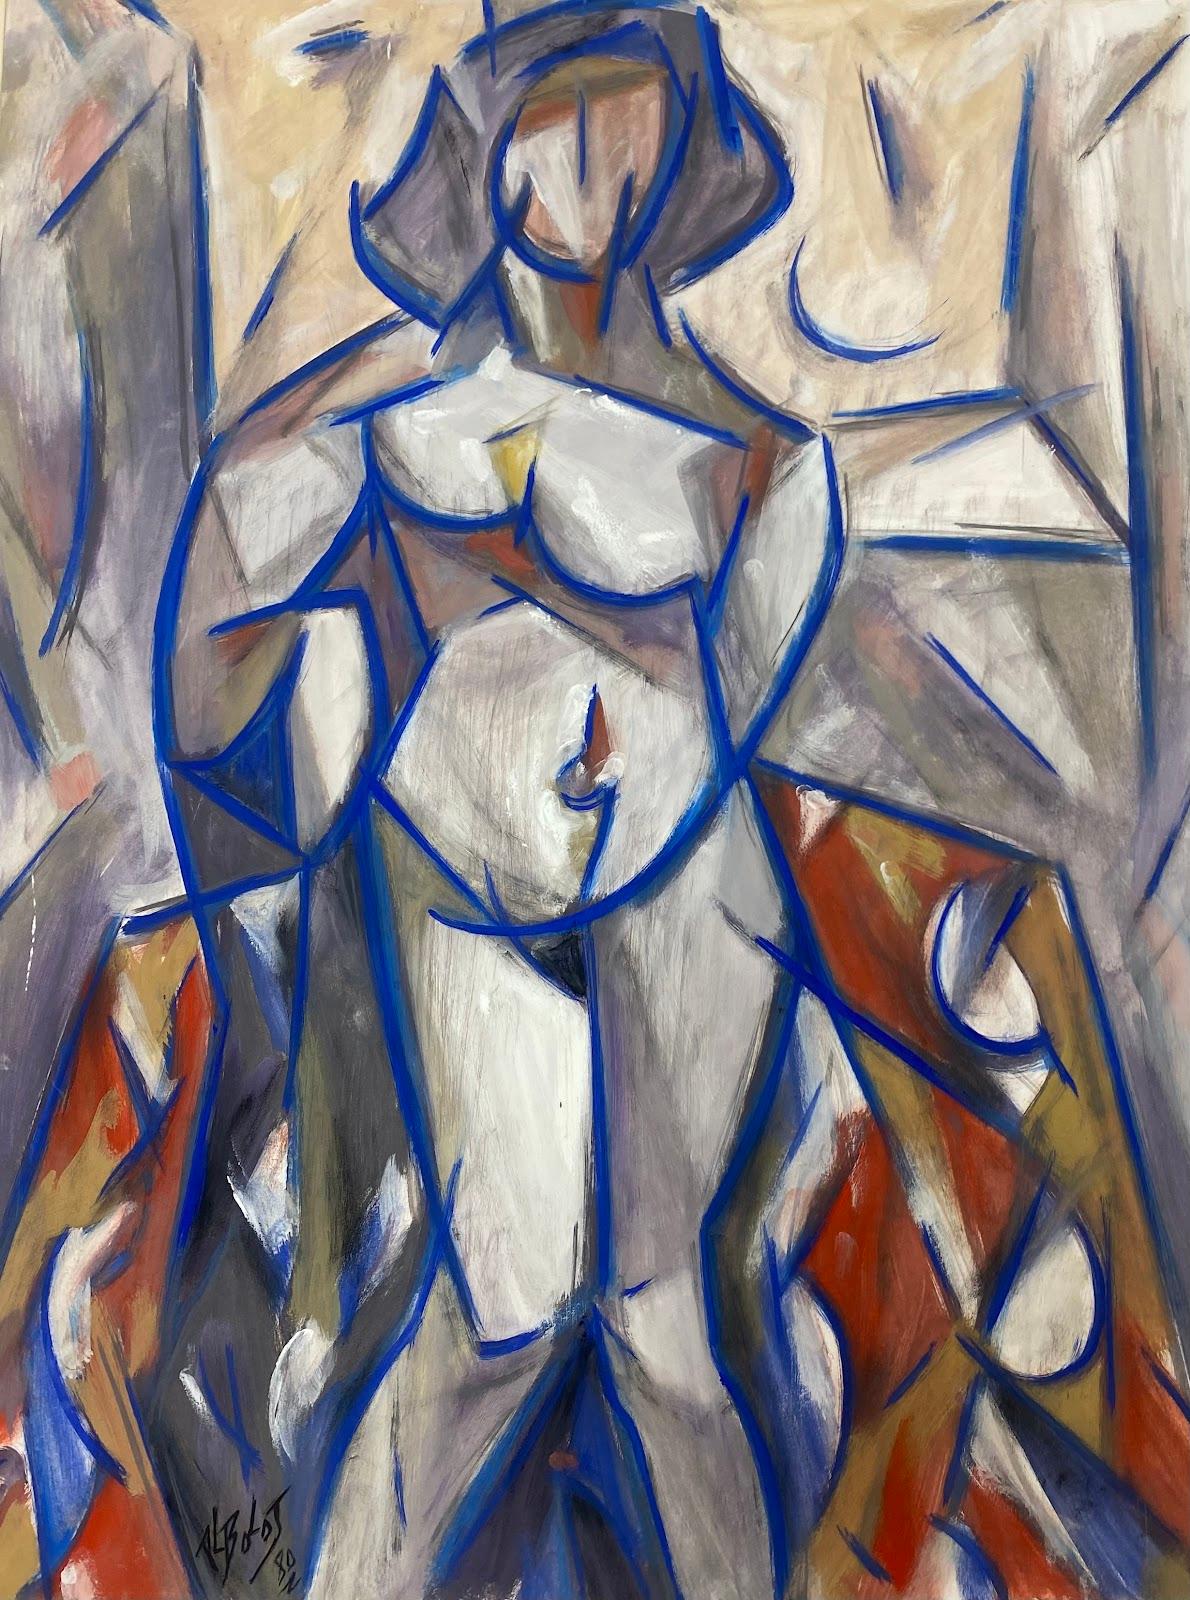 Figurative Painting Paul-Louis Bolot (French 1918-2003) - Peinture cubiste française du 20ème siècle représentant une femme nue et bleue abstraite